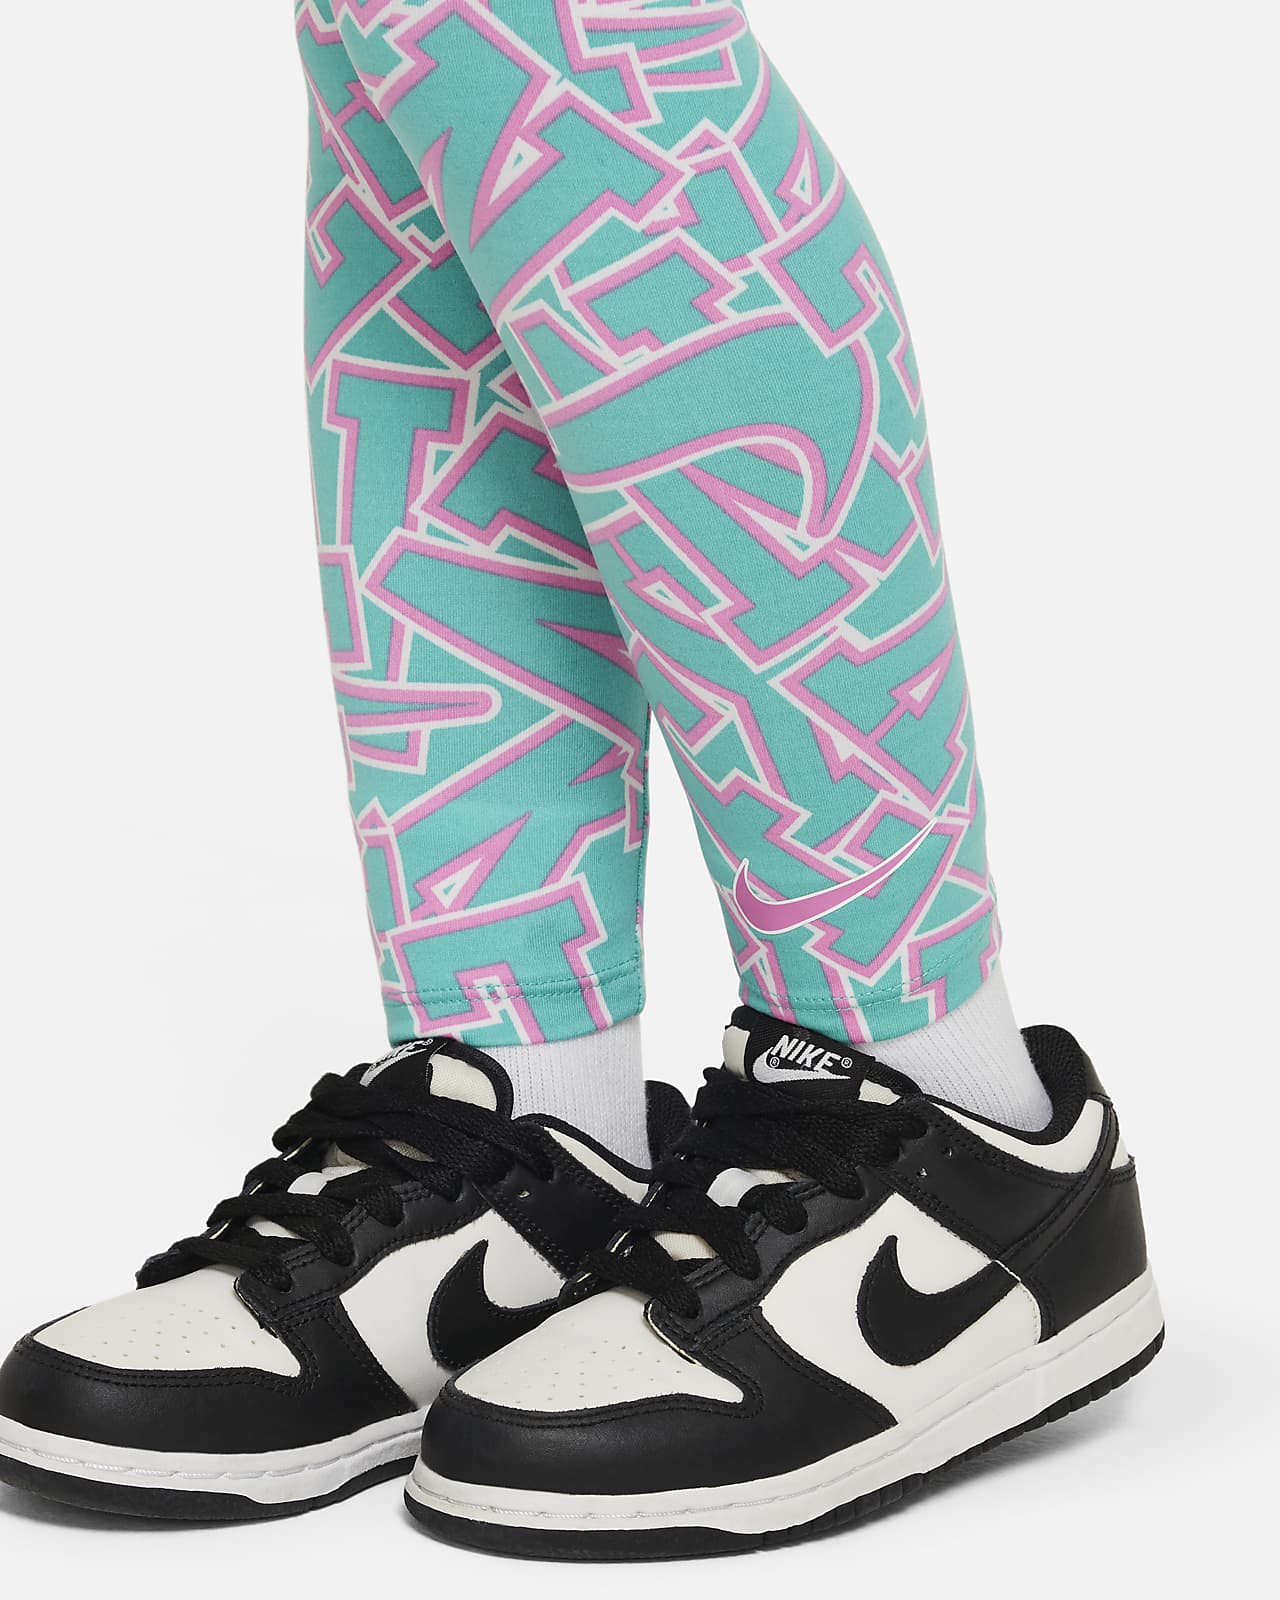 Le legging court insertion filet, Nike